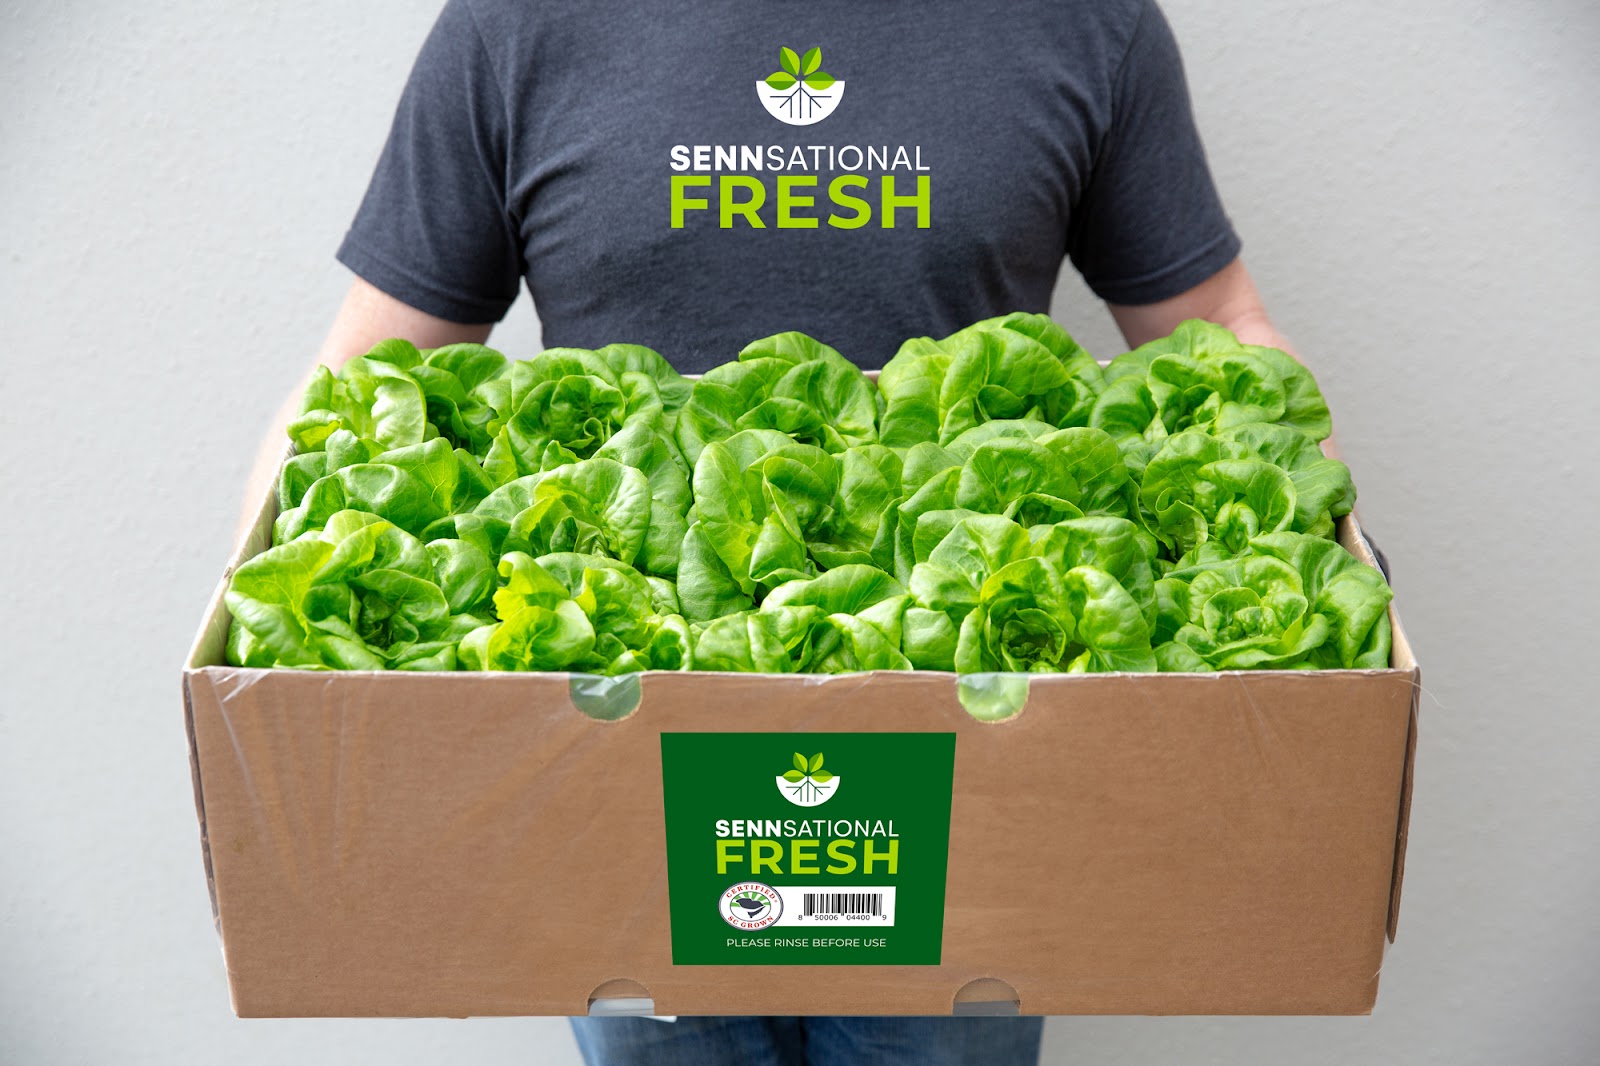 A person in a Sennsational Fresh tshirt holding a cardboard box of fresh lettuce greens